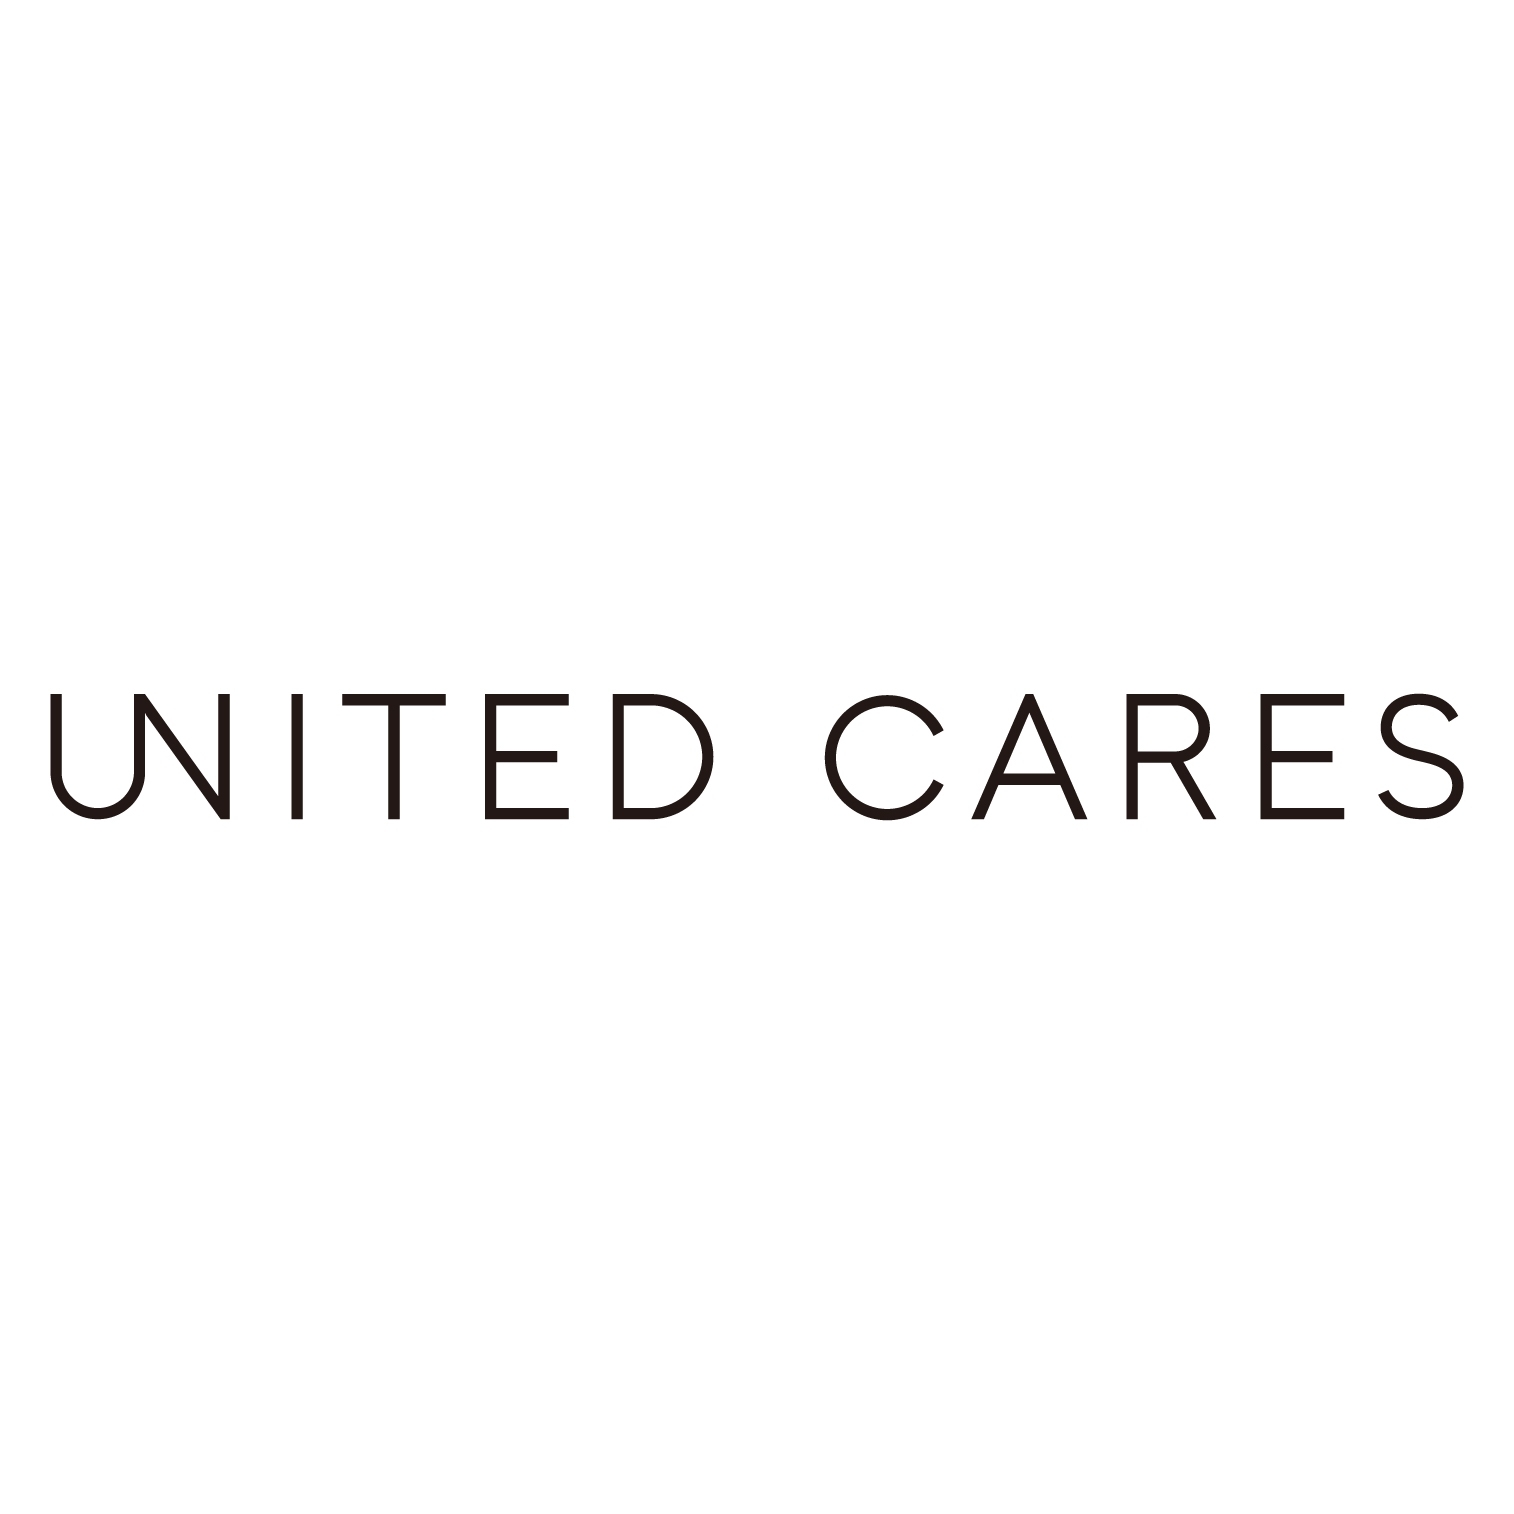 UNITED CARES